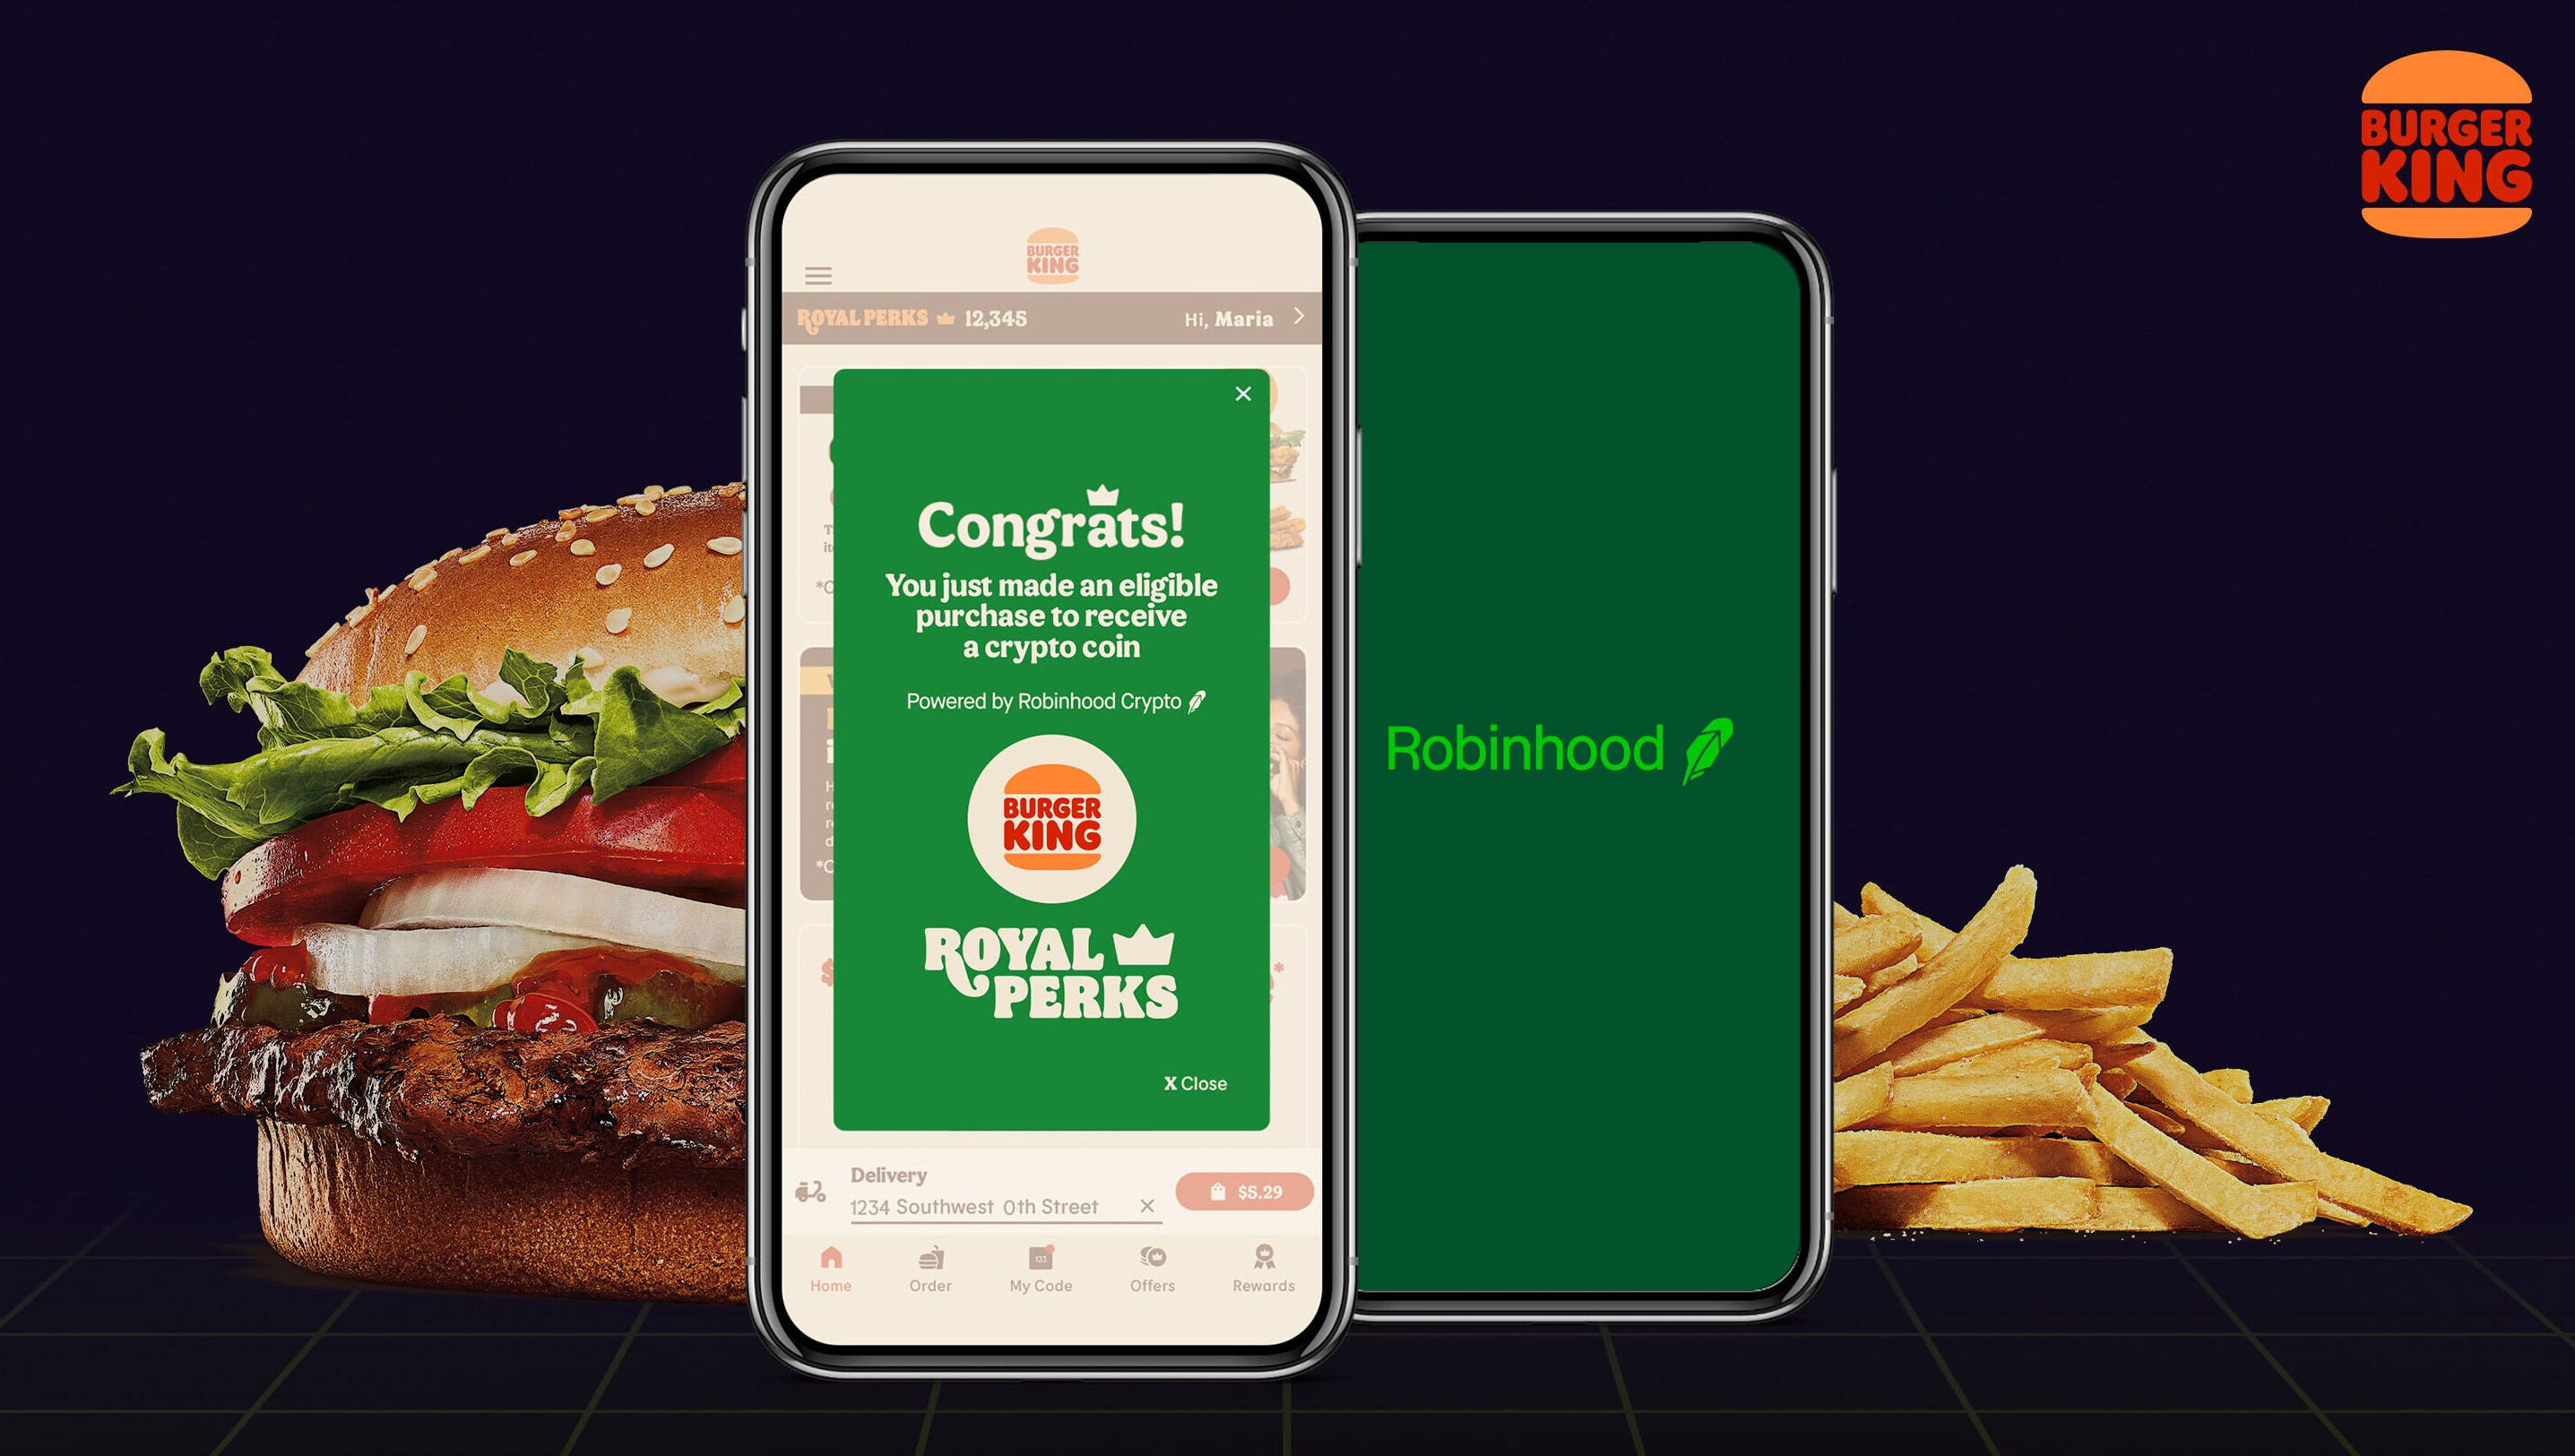 Burger King e Robinhood al servizio delle criptovalute con Bitcoin, Dogecoin, Ethereum in omaggio - Immagine